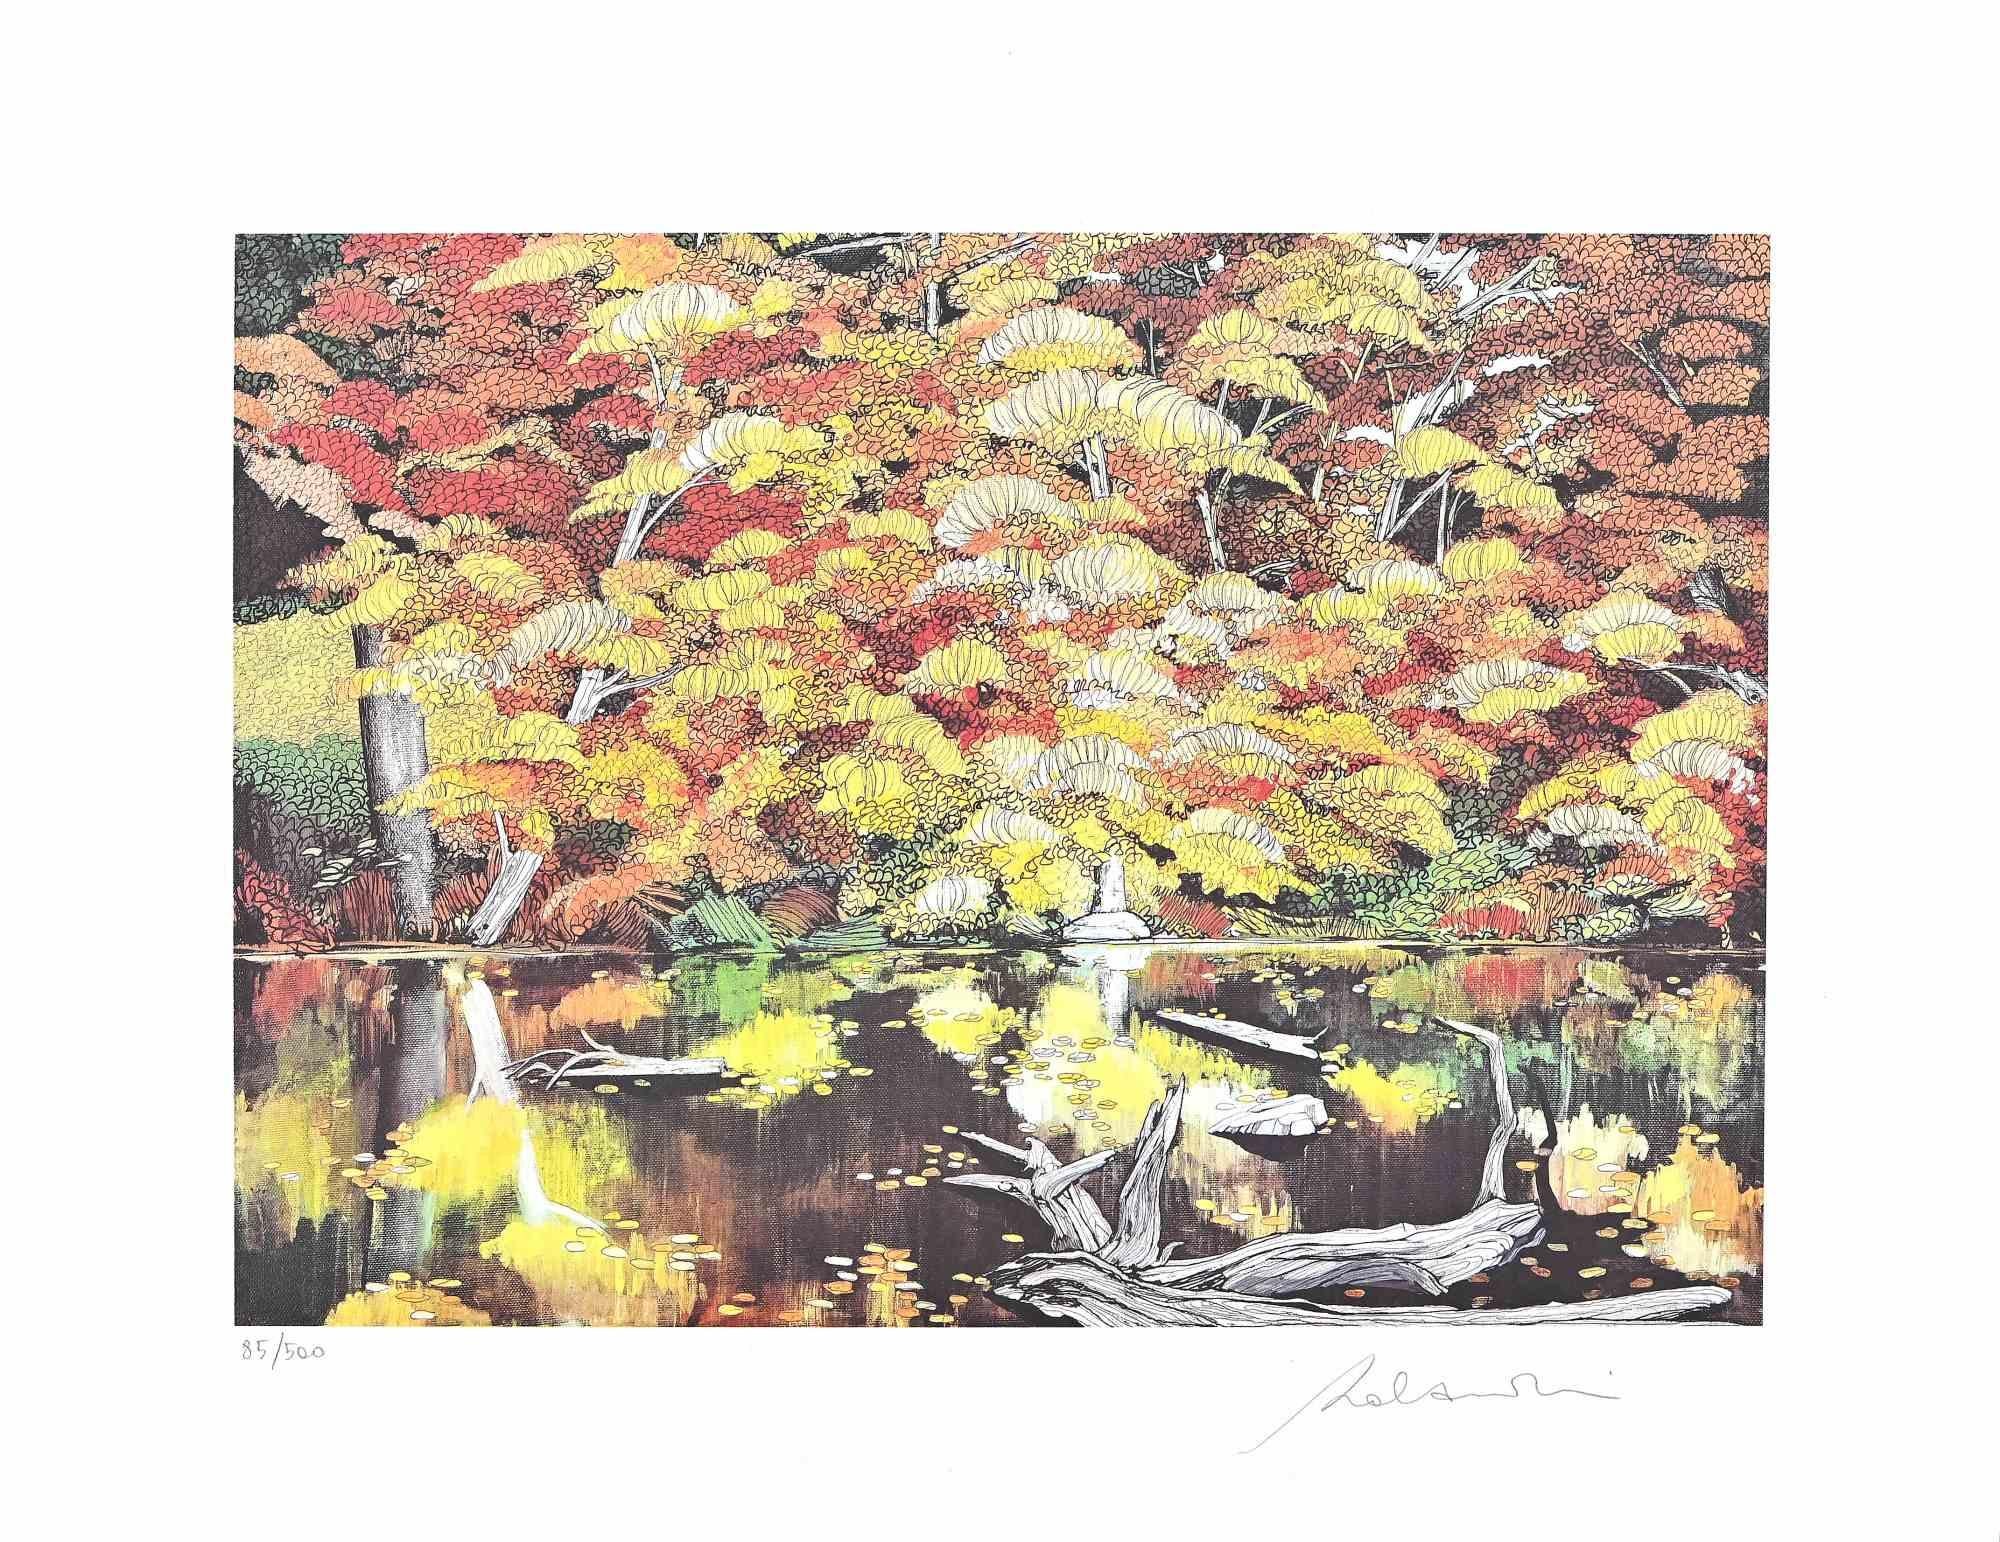 Rolandi (Maurizio Coccia) Landscape Print - Beside The Lake - Screen Print by Rolandi - 1980s